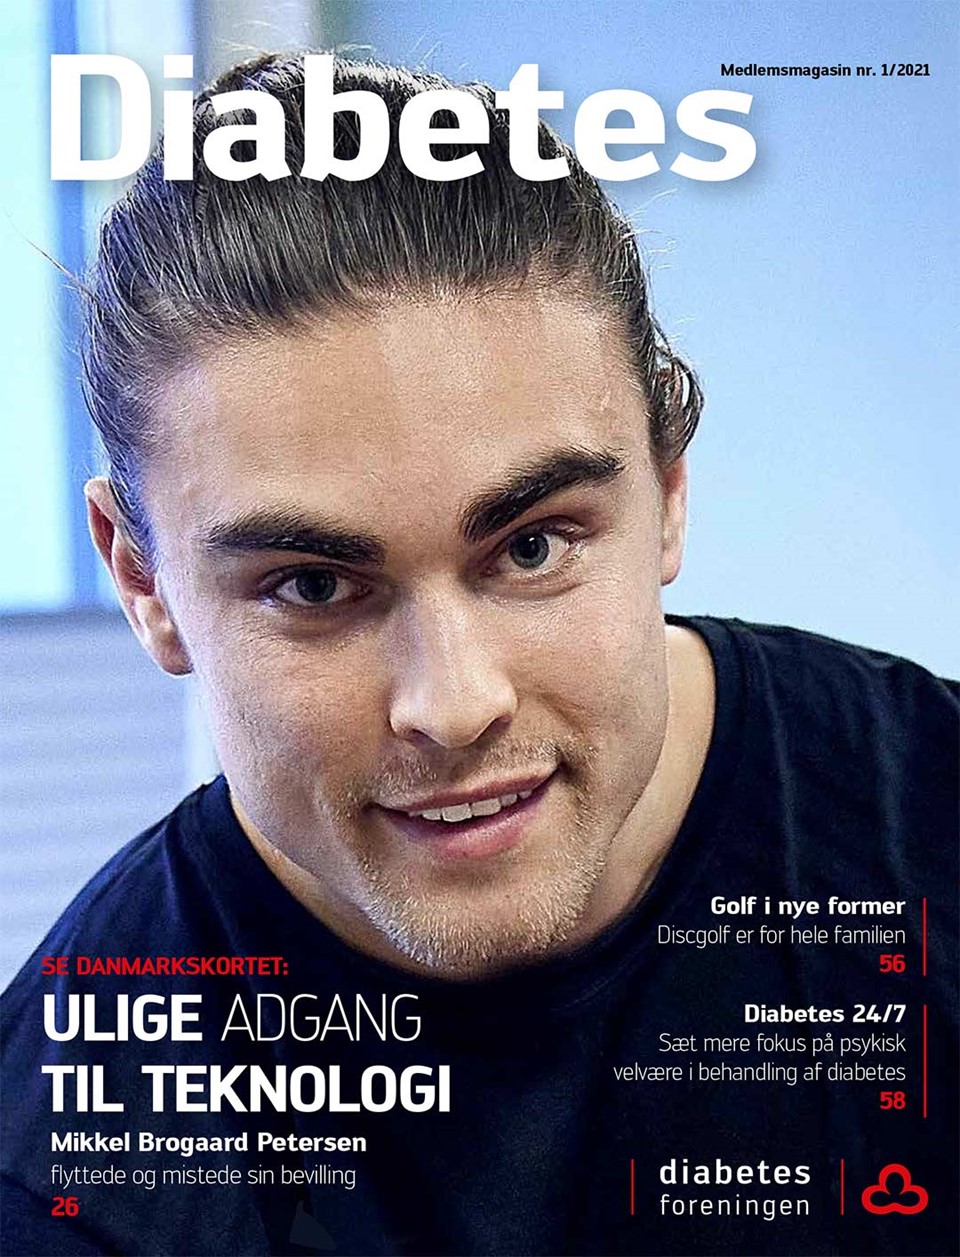  Forside af magasinet Diabetes marts 2021